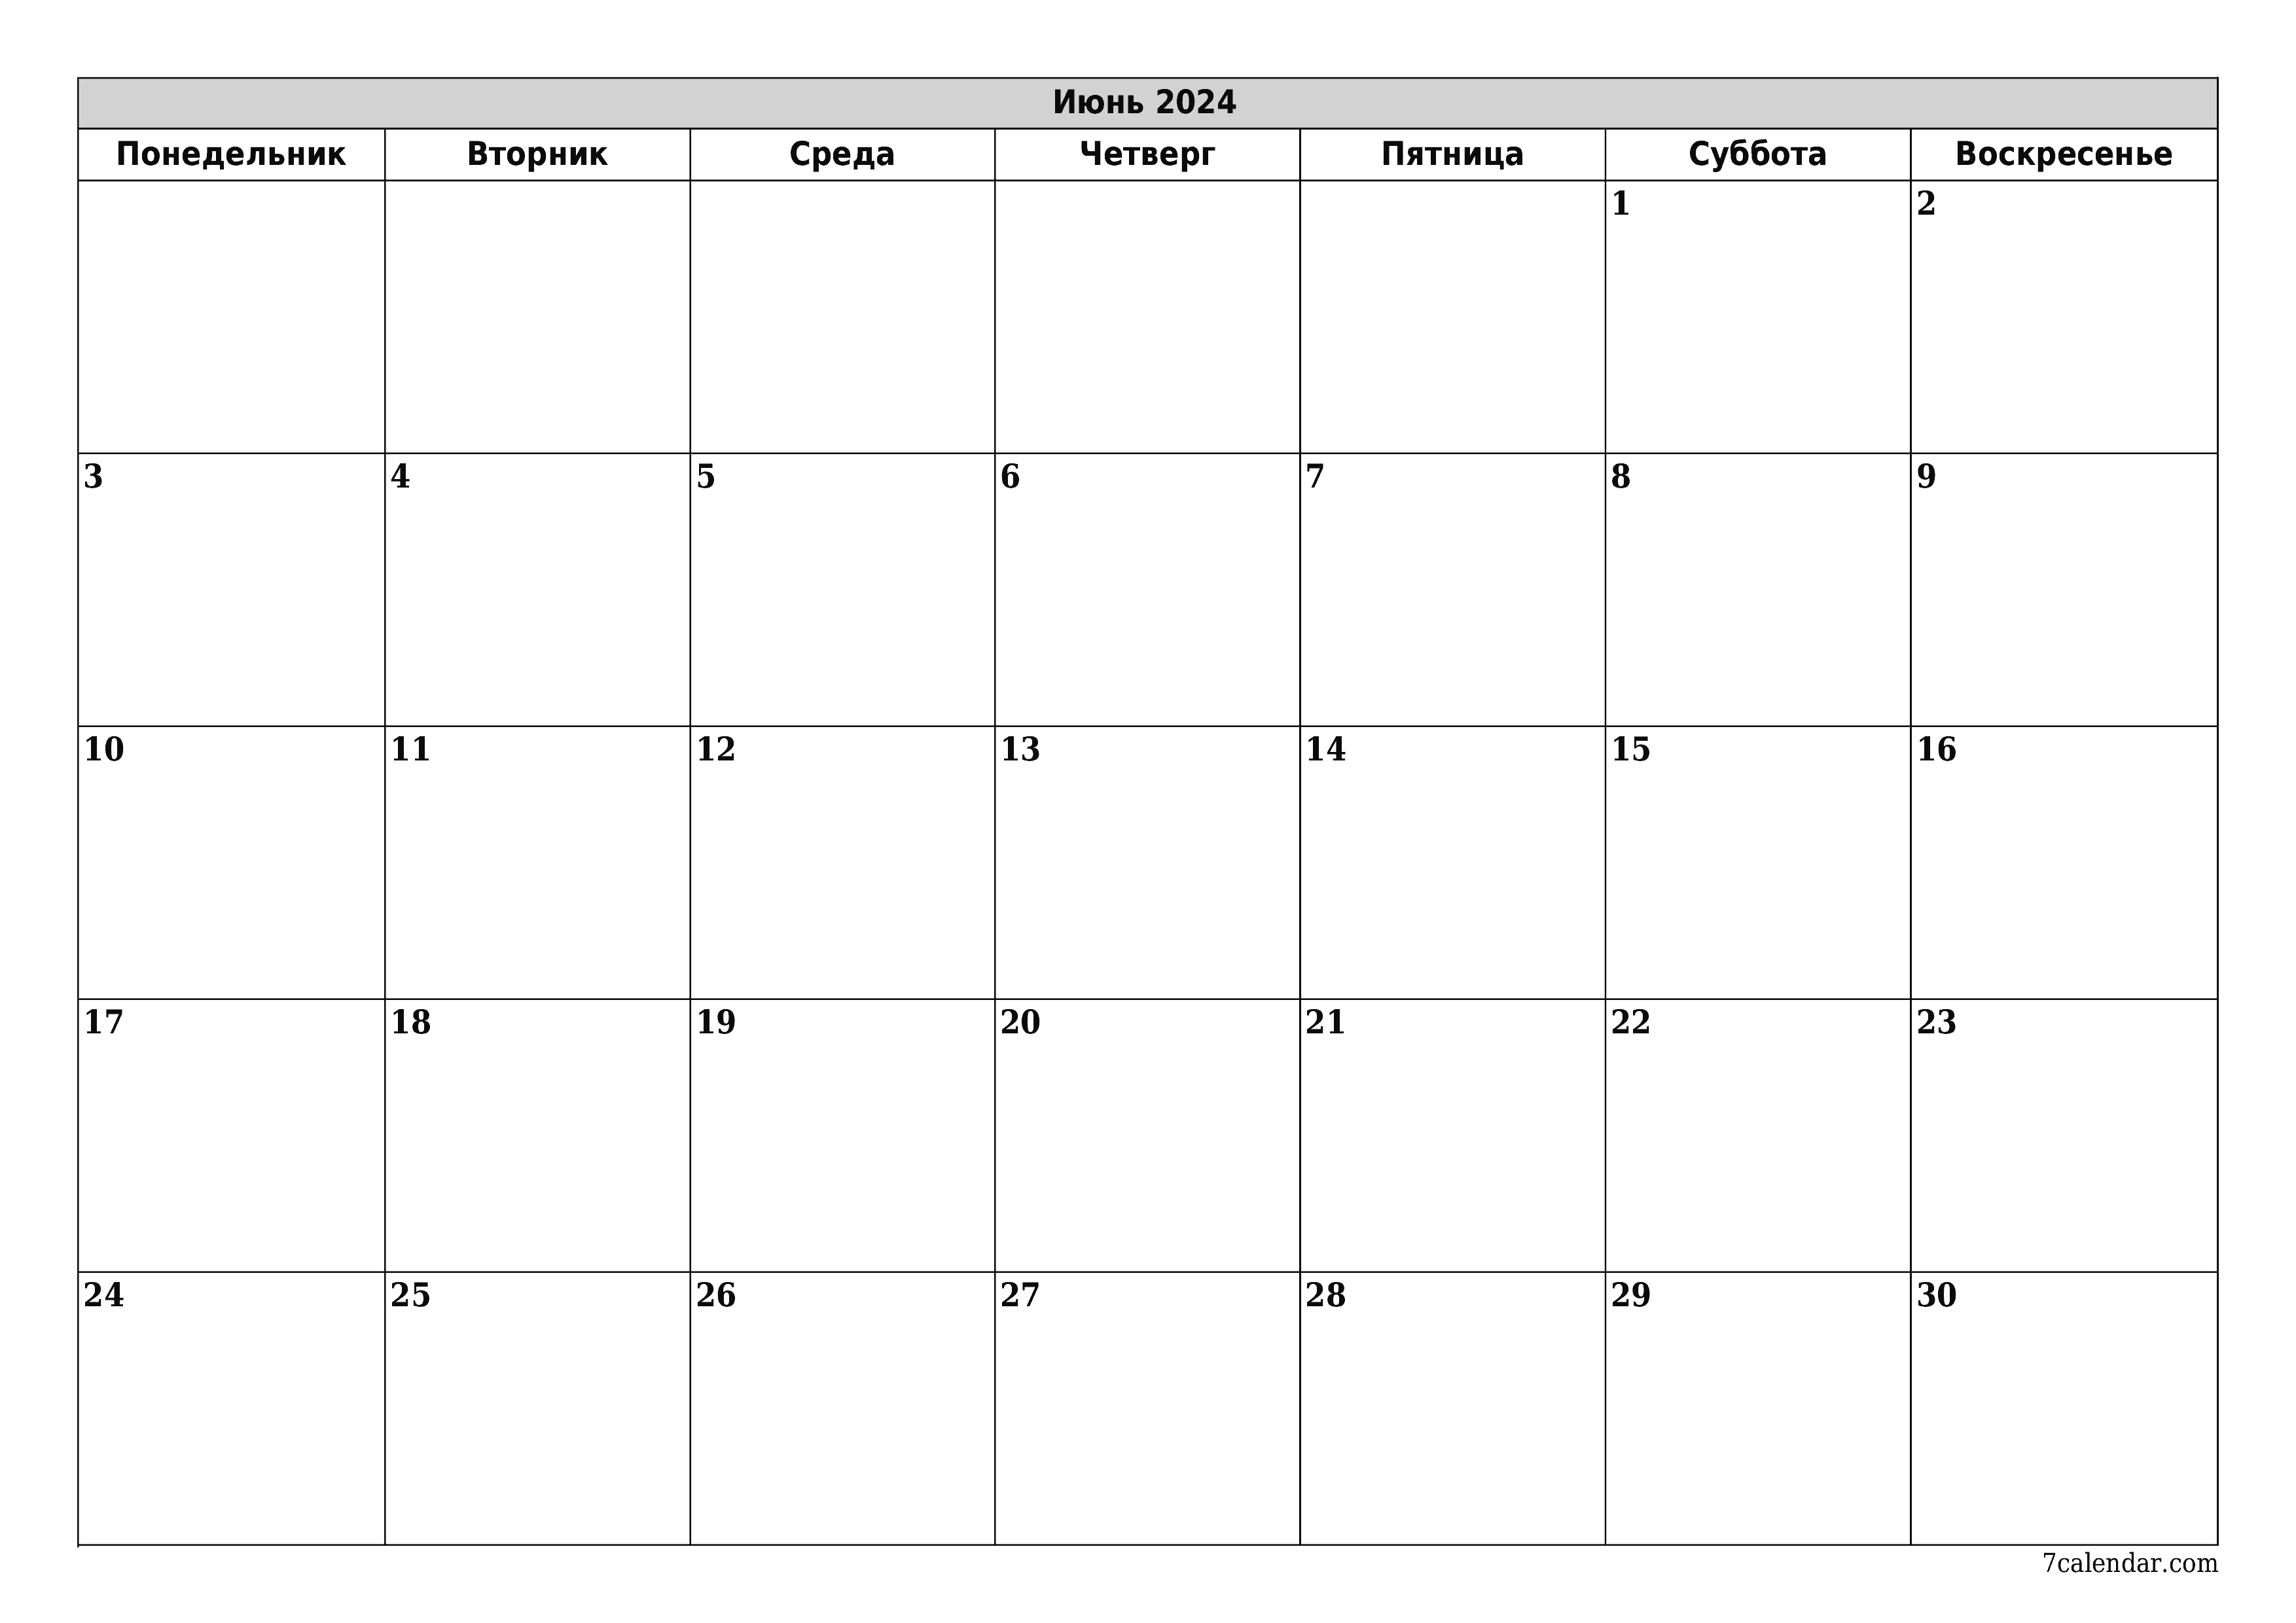 Календари и планеры для печати на месяц Июнь 2024 A4, A3 в PDF и PNG -  7calendar